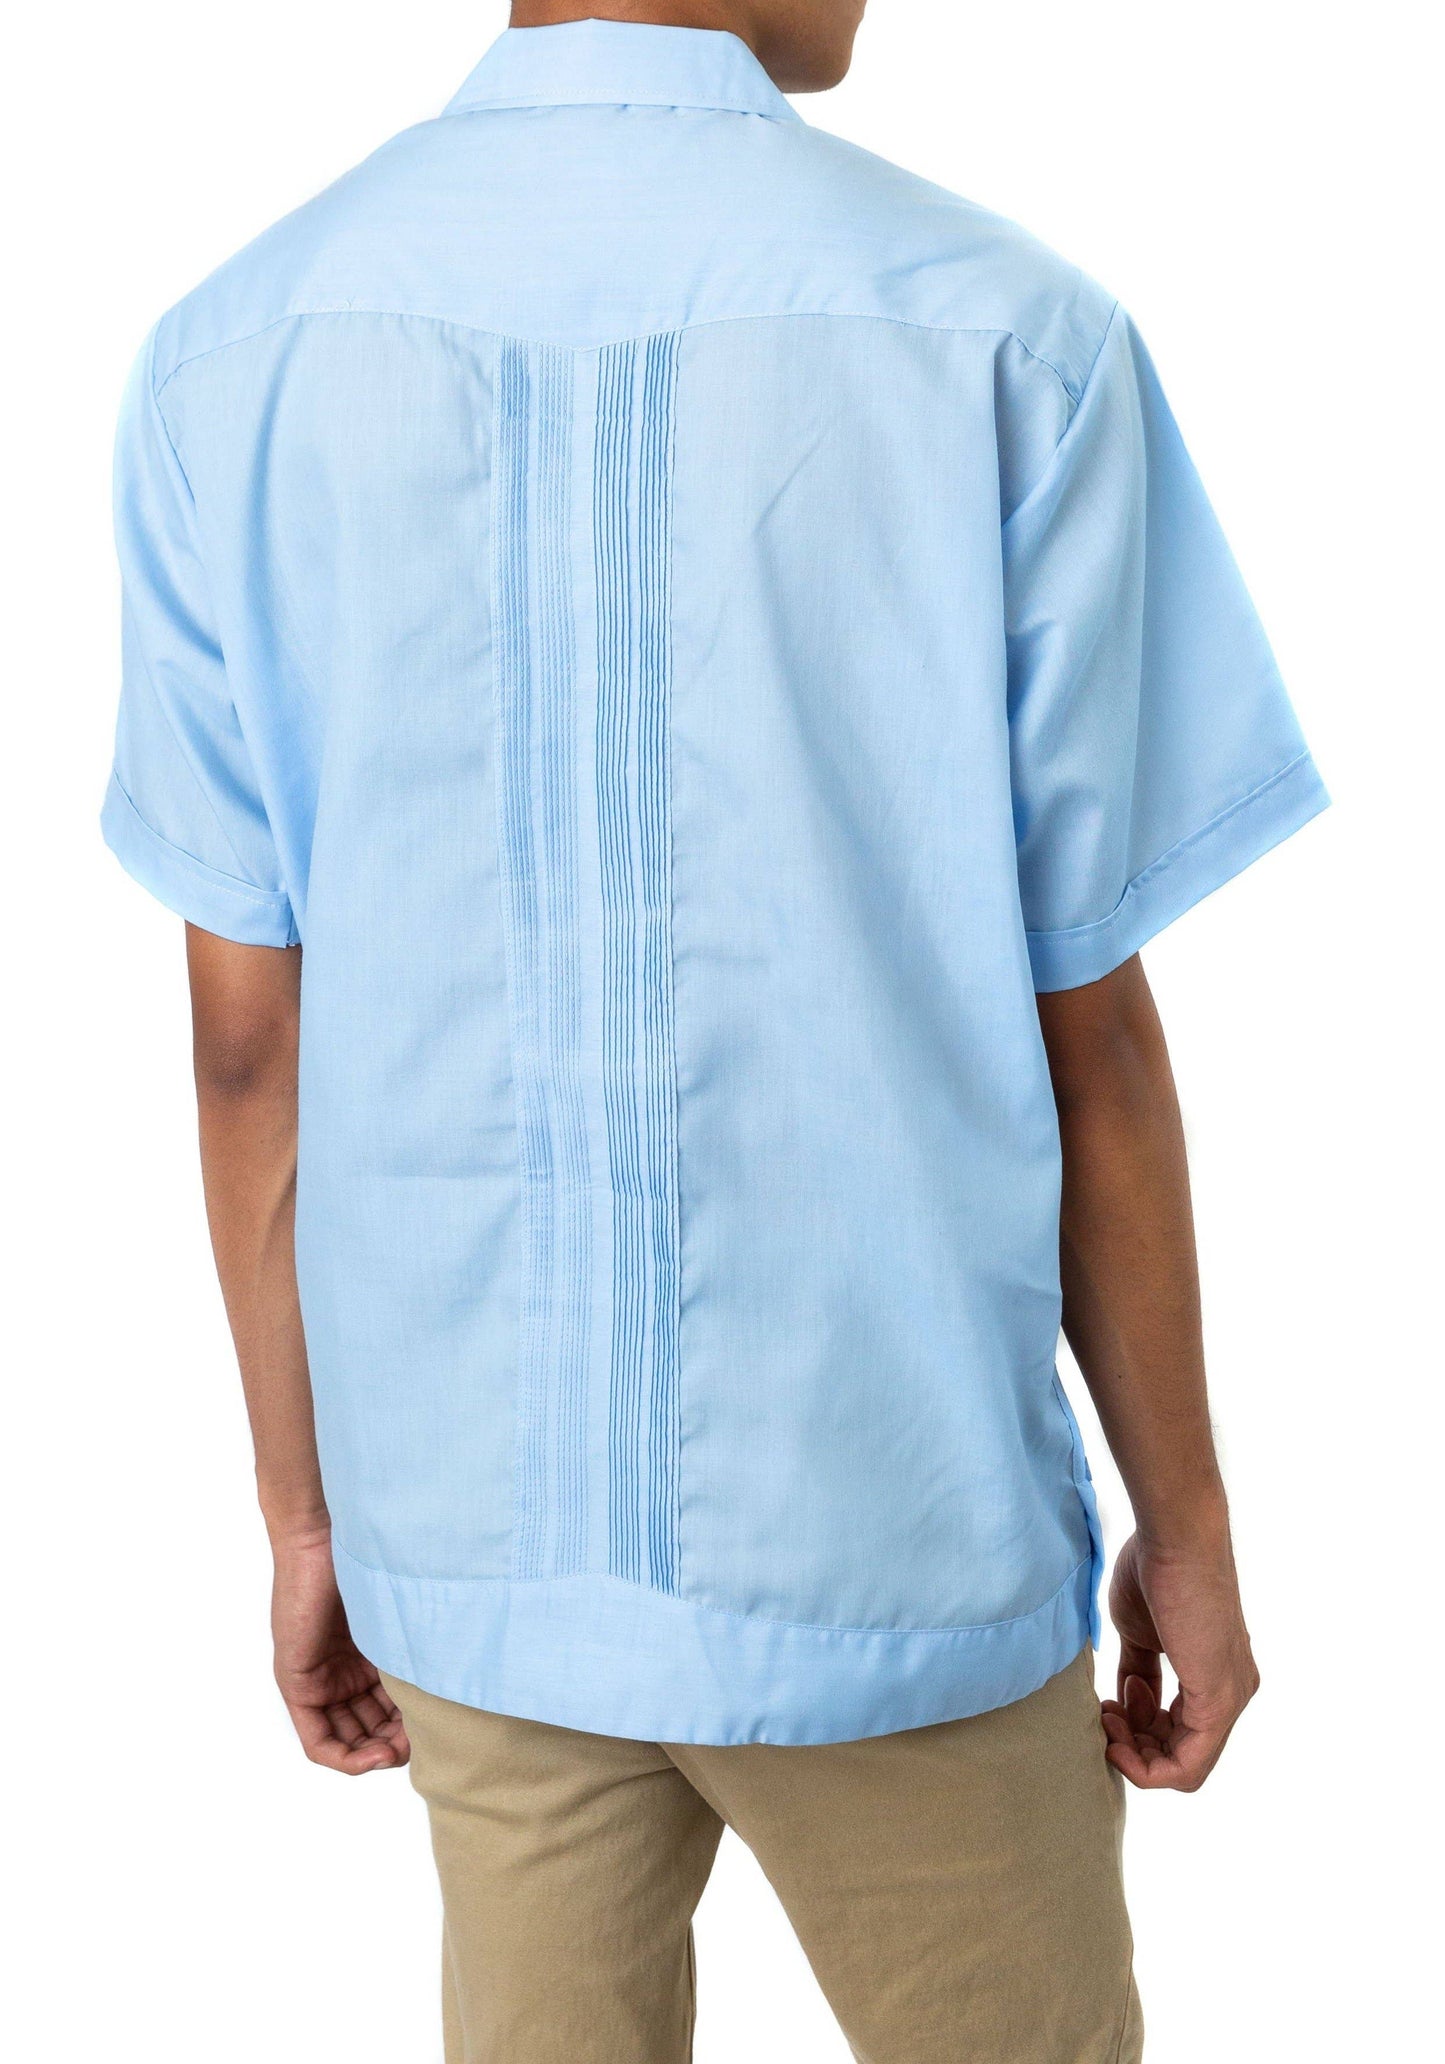 SIDREY Guayabera Classic Shirt- Light Blue